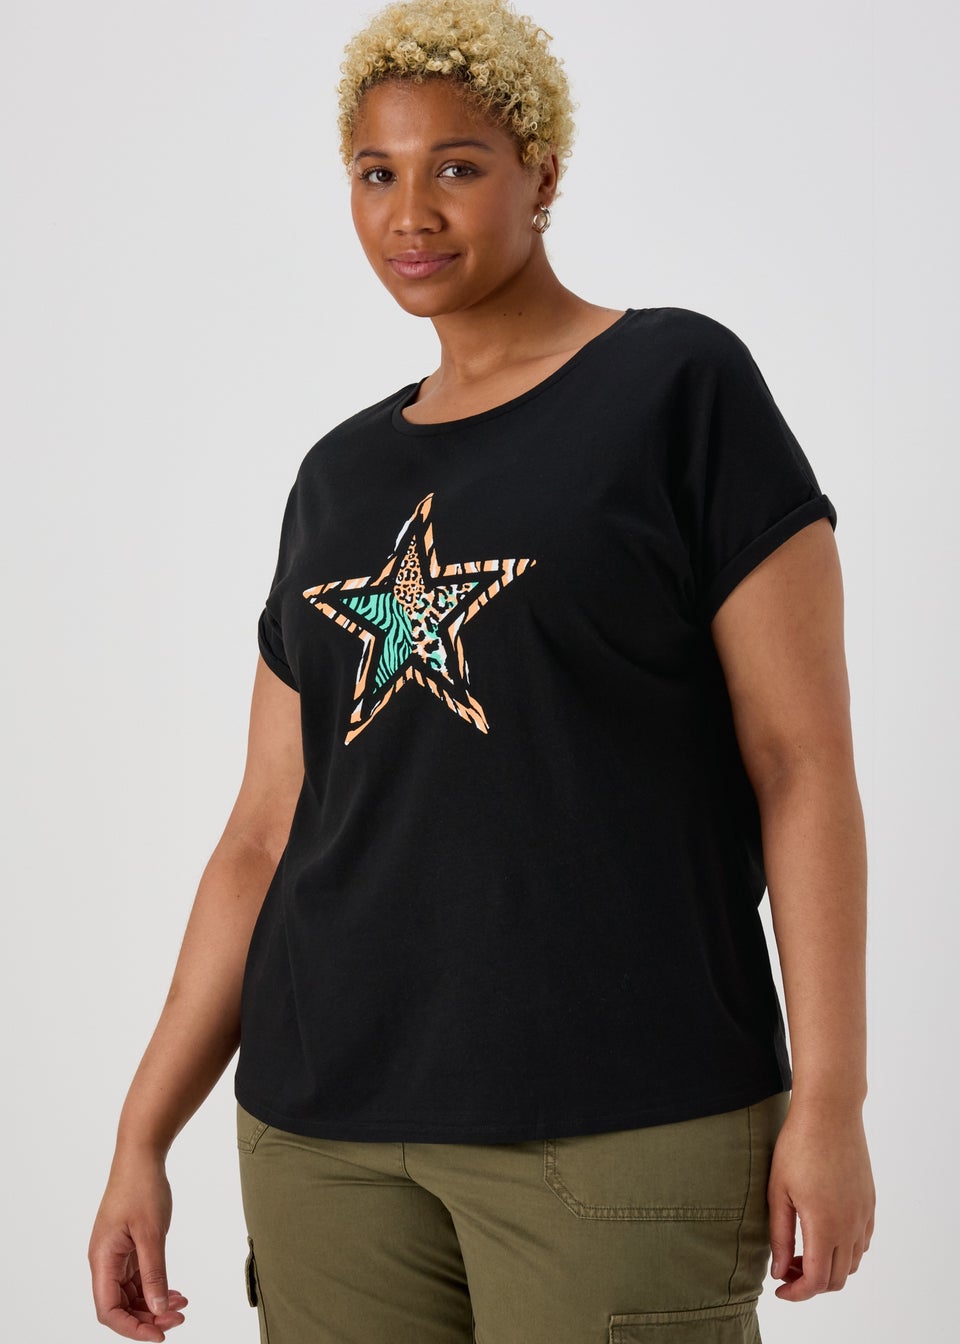 Black Leopard Star T-Shirt